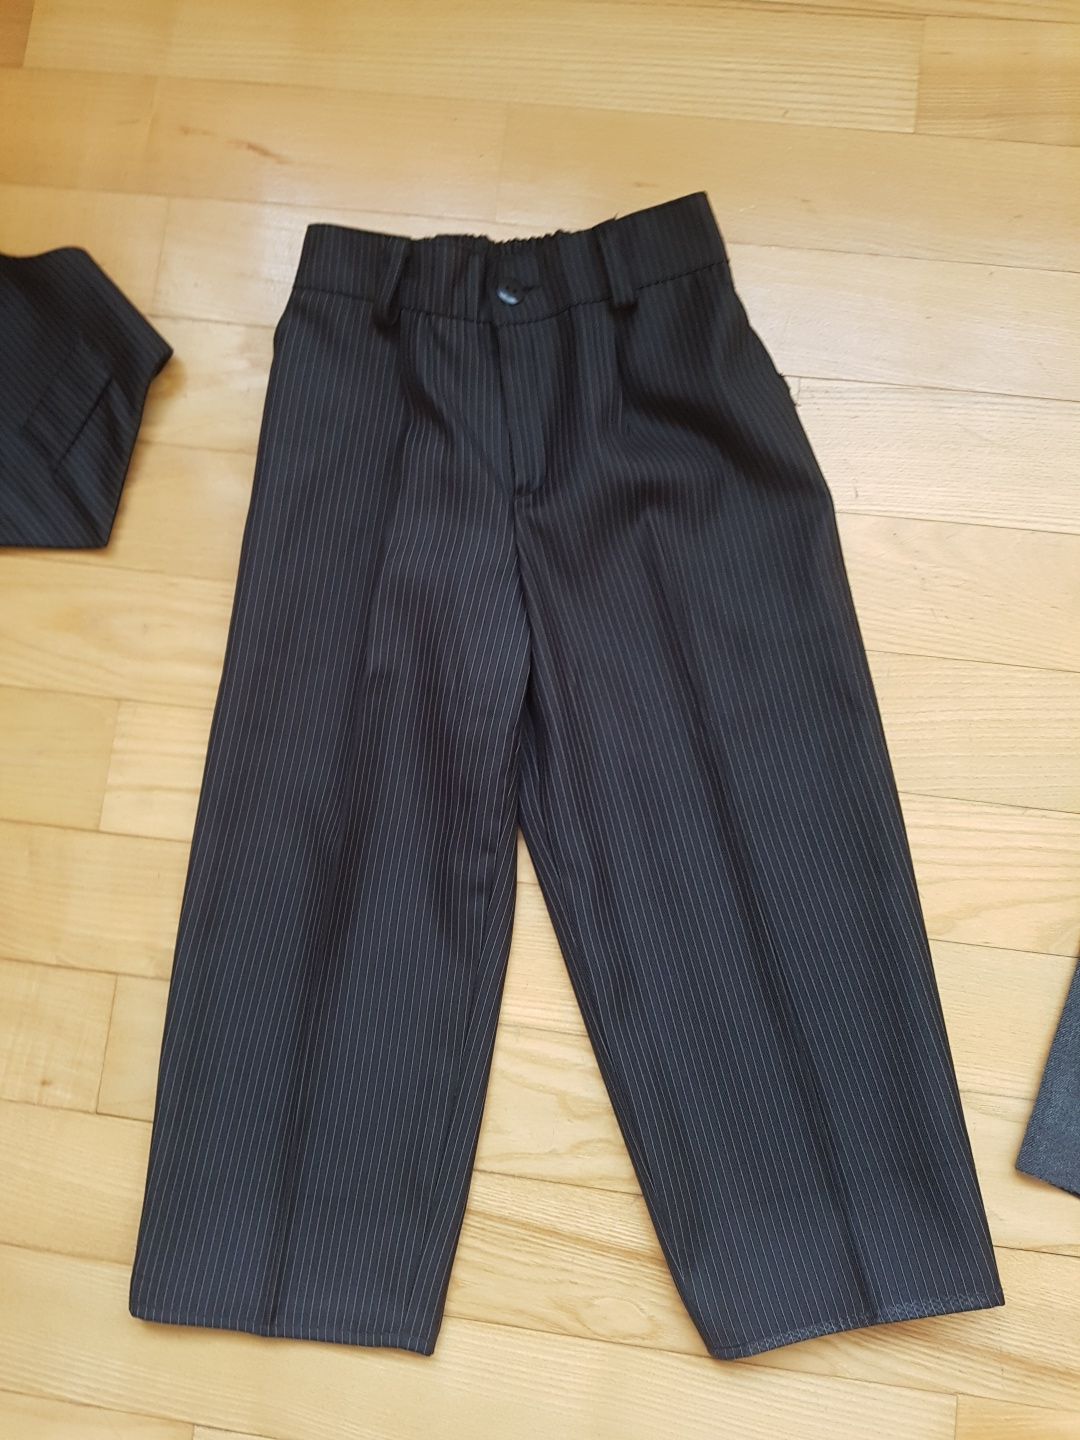 Брюки 98 104 штани чорні тонкі тоненькі, сірі плотні жилет костюм "2"